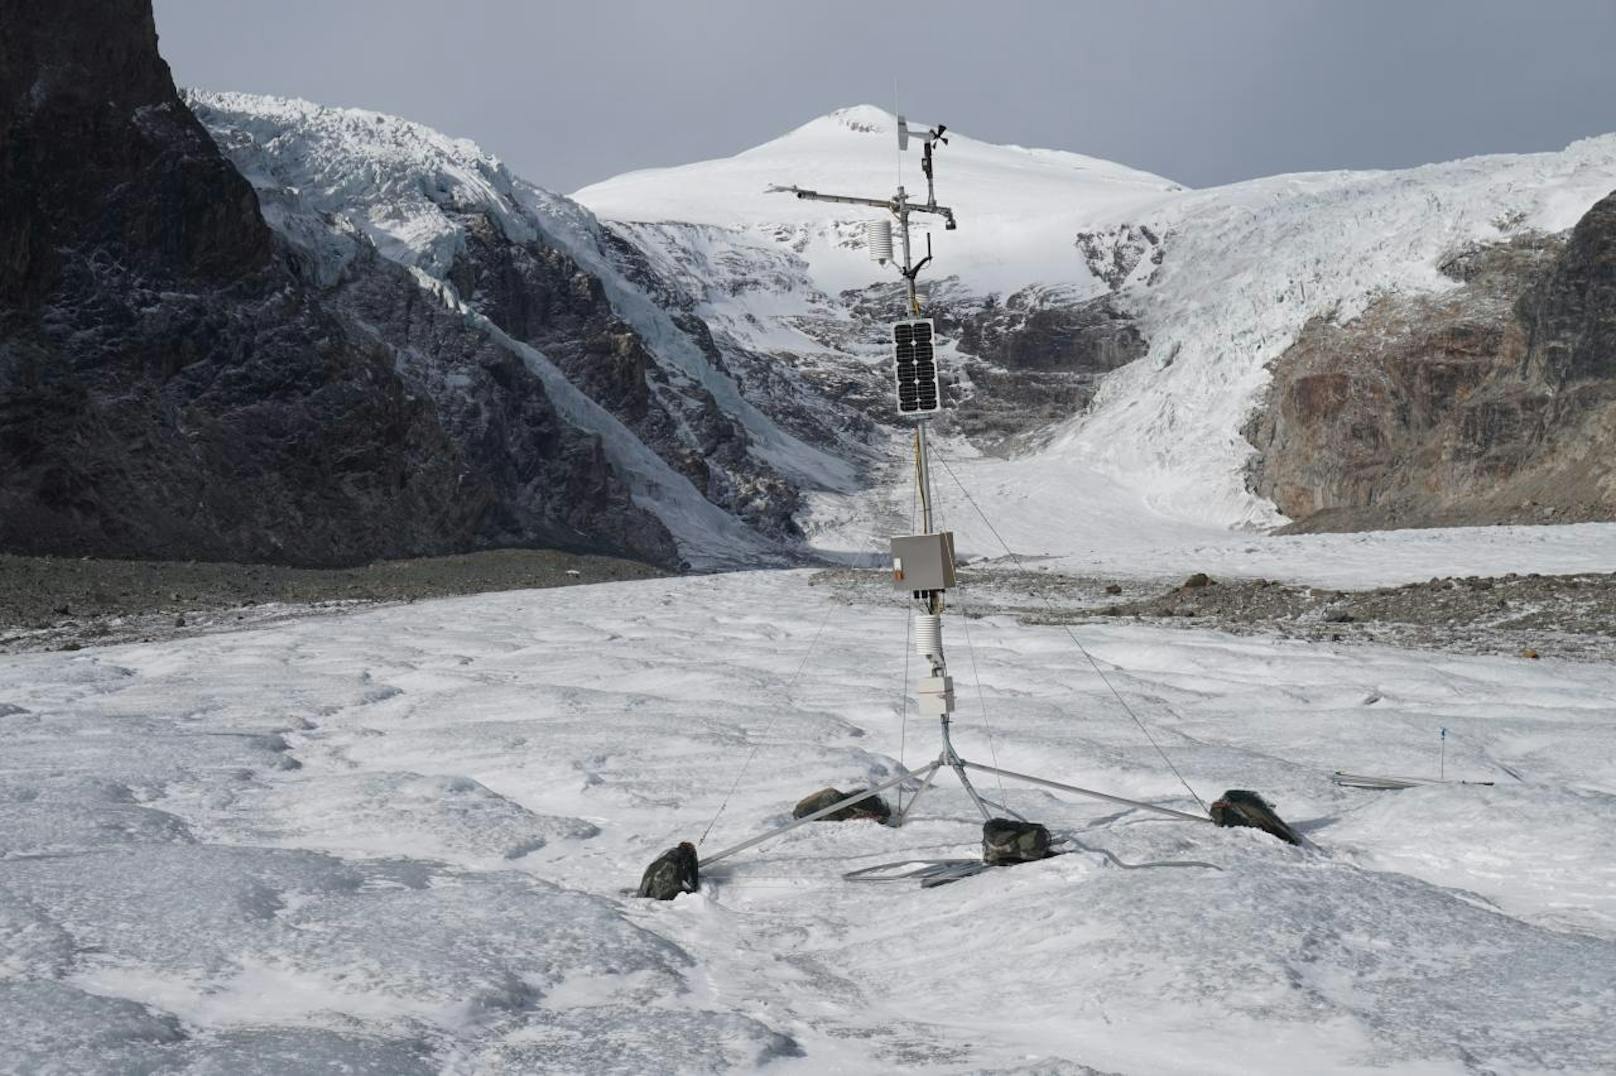 Die Wetterstation der ZAMG auf der Pasterze: Zusätzlich zu den meteorologischen Parametern wird auch die Schneehöhe und die Eisabschmelzung gemessen.